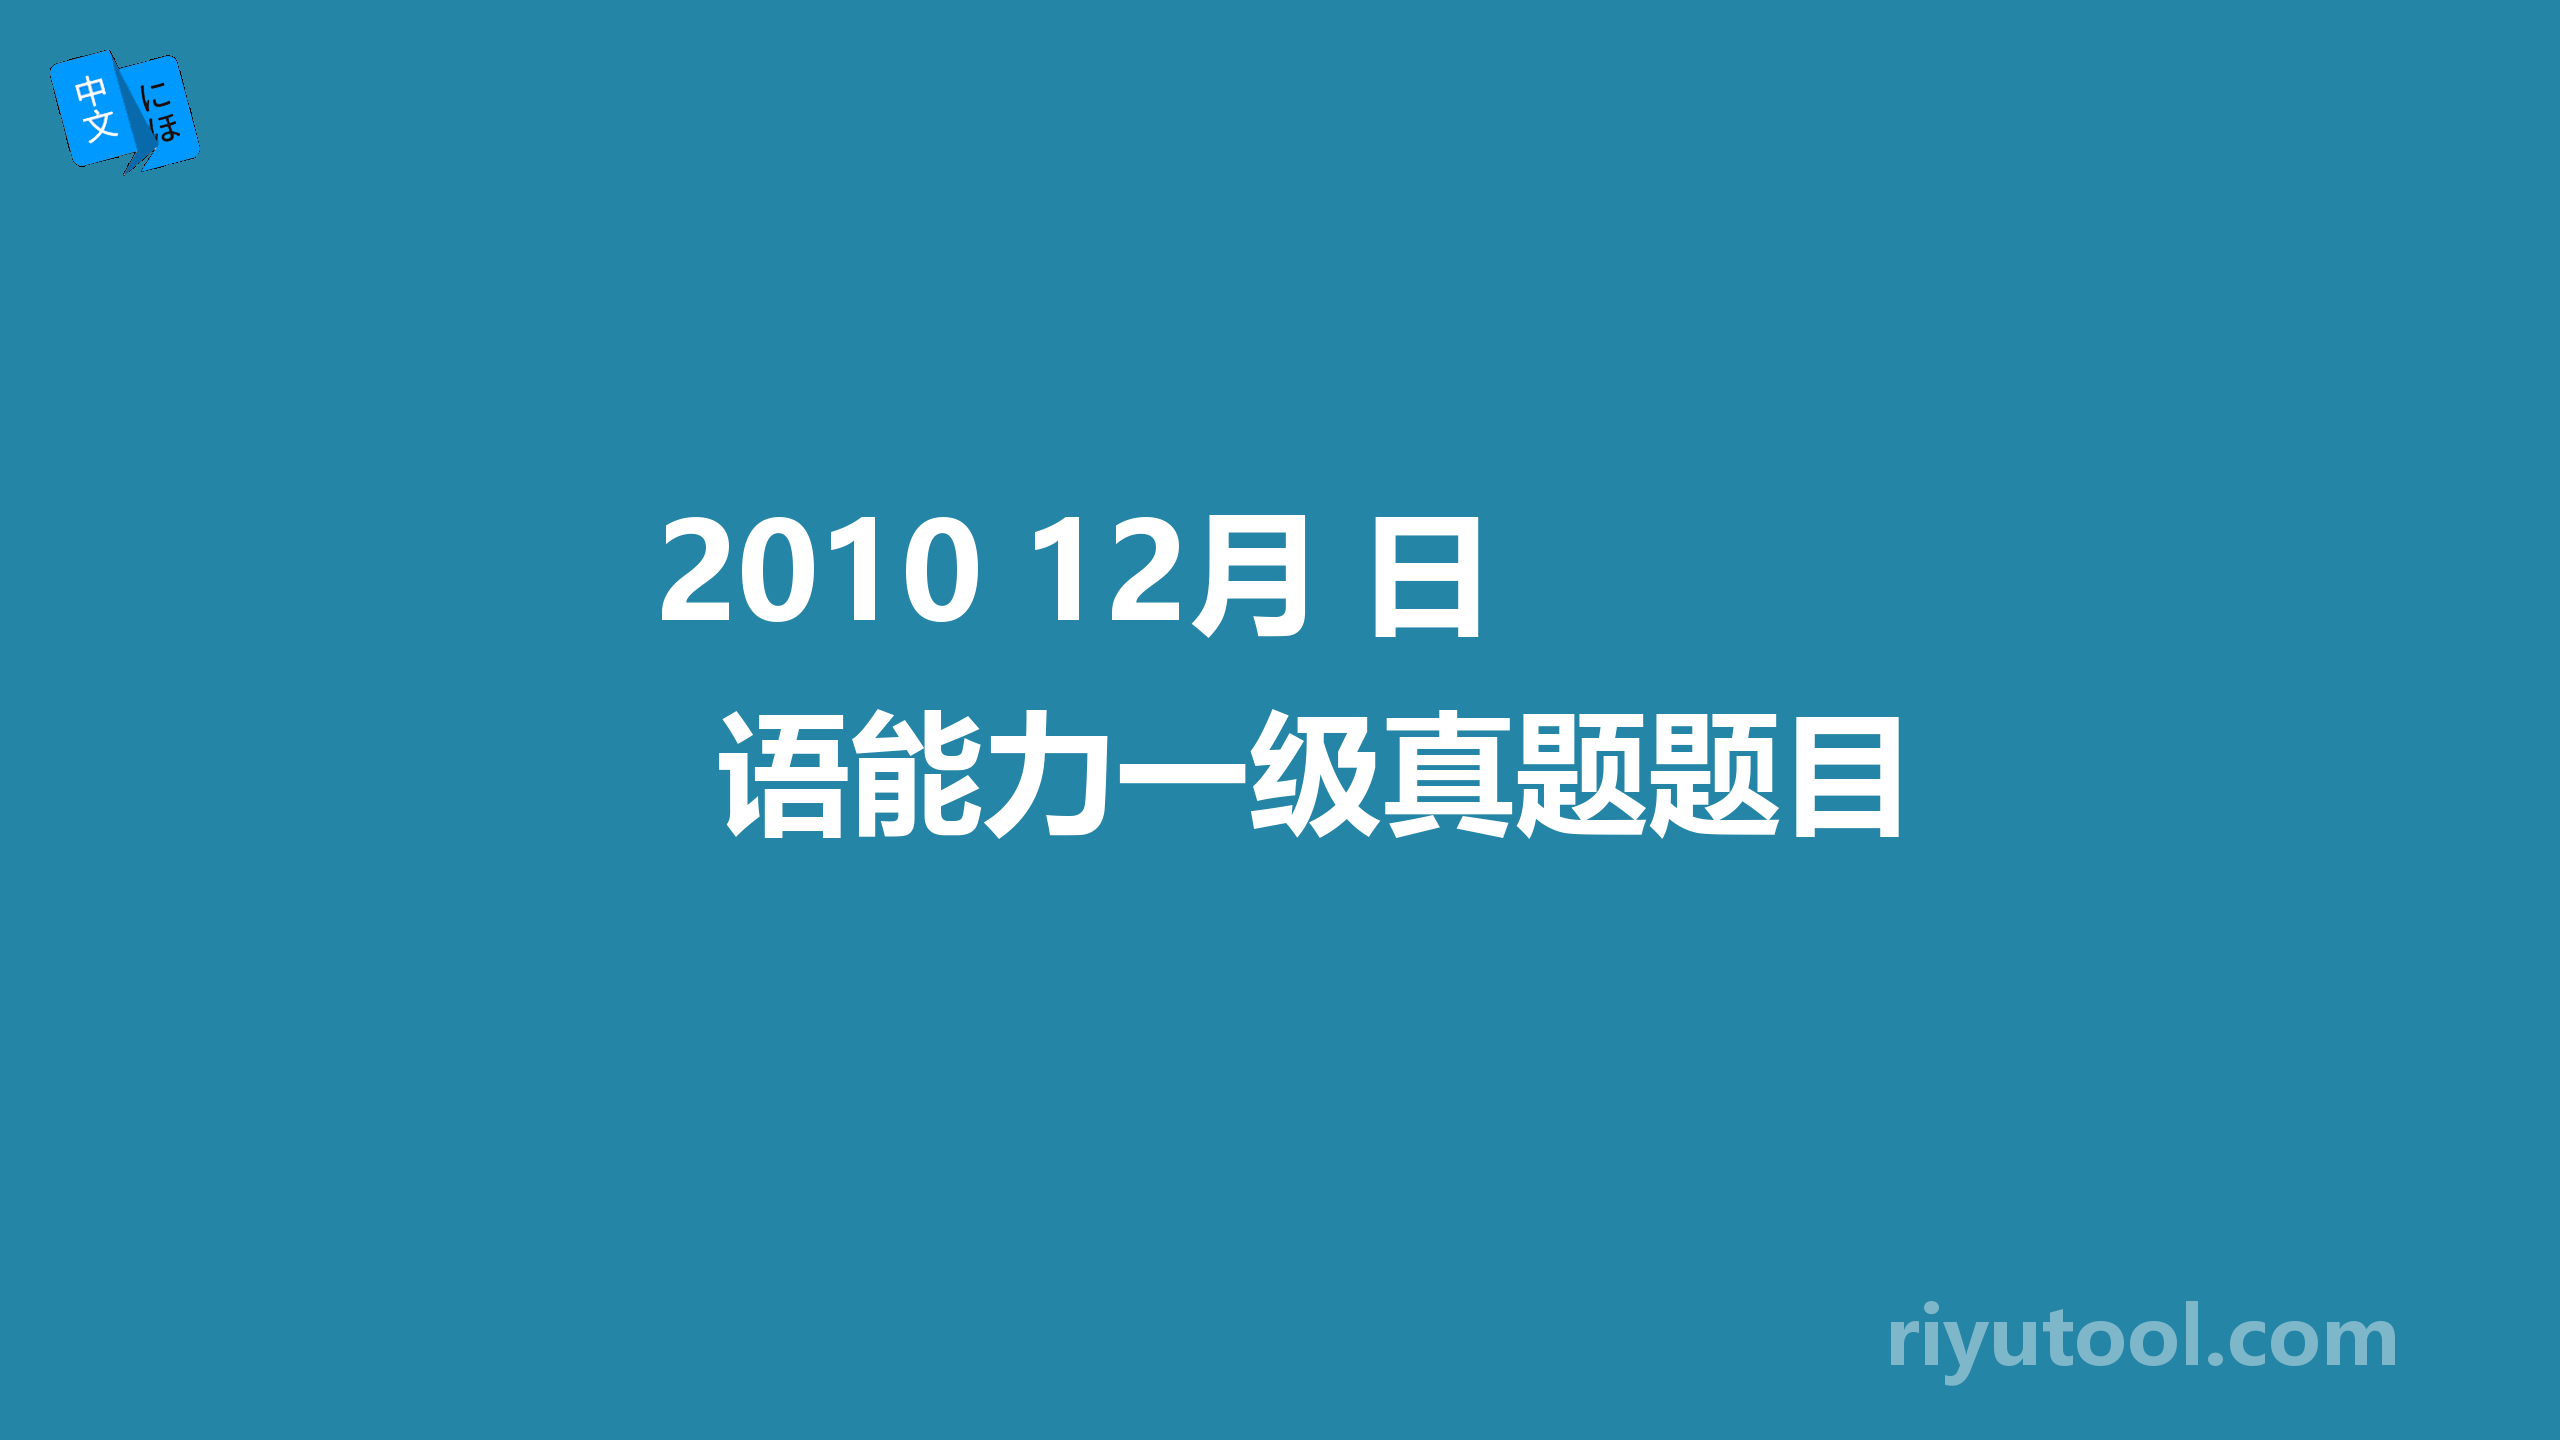 2010 12月 日语能力一级真题题目